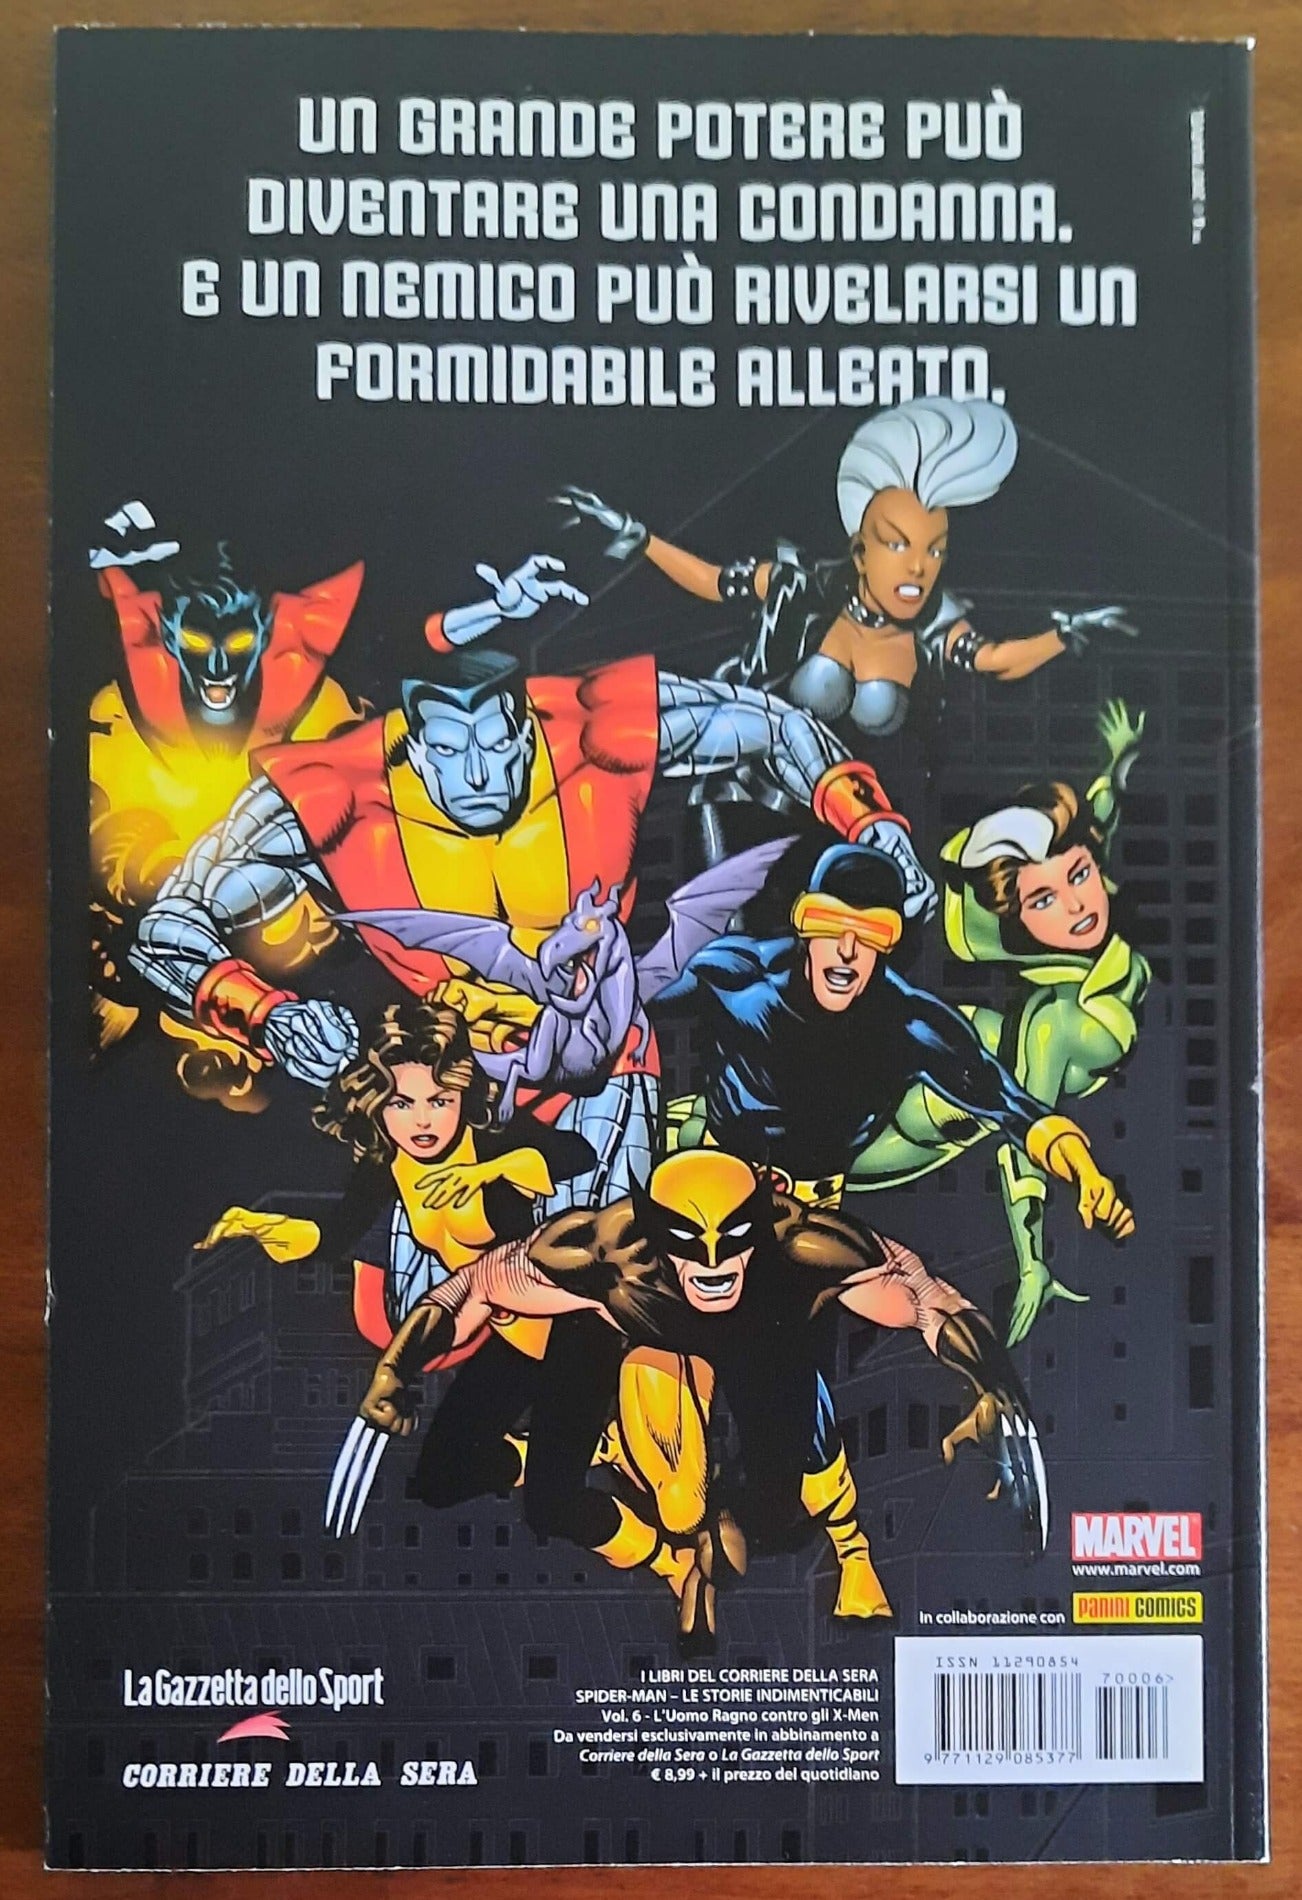 Spider-Man: Le storie indimenticabili - Vol. 06 - L’Uomo Ragno contro gli X-Men